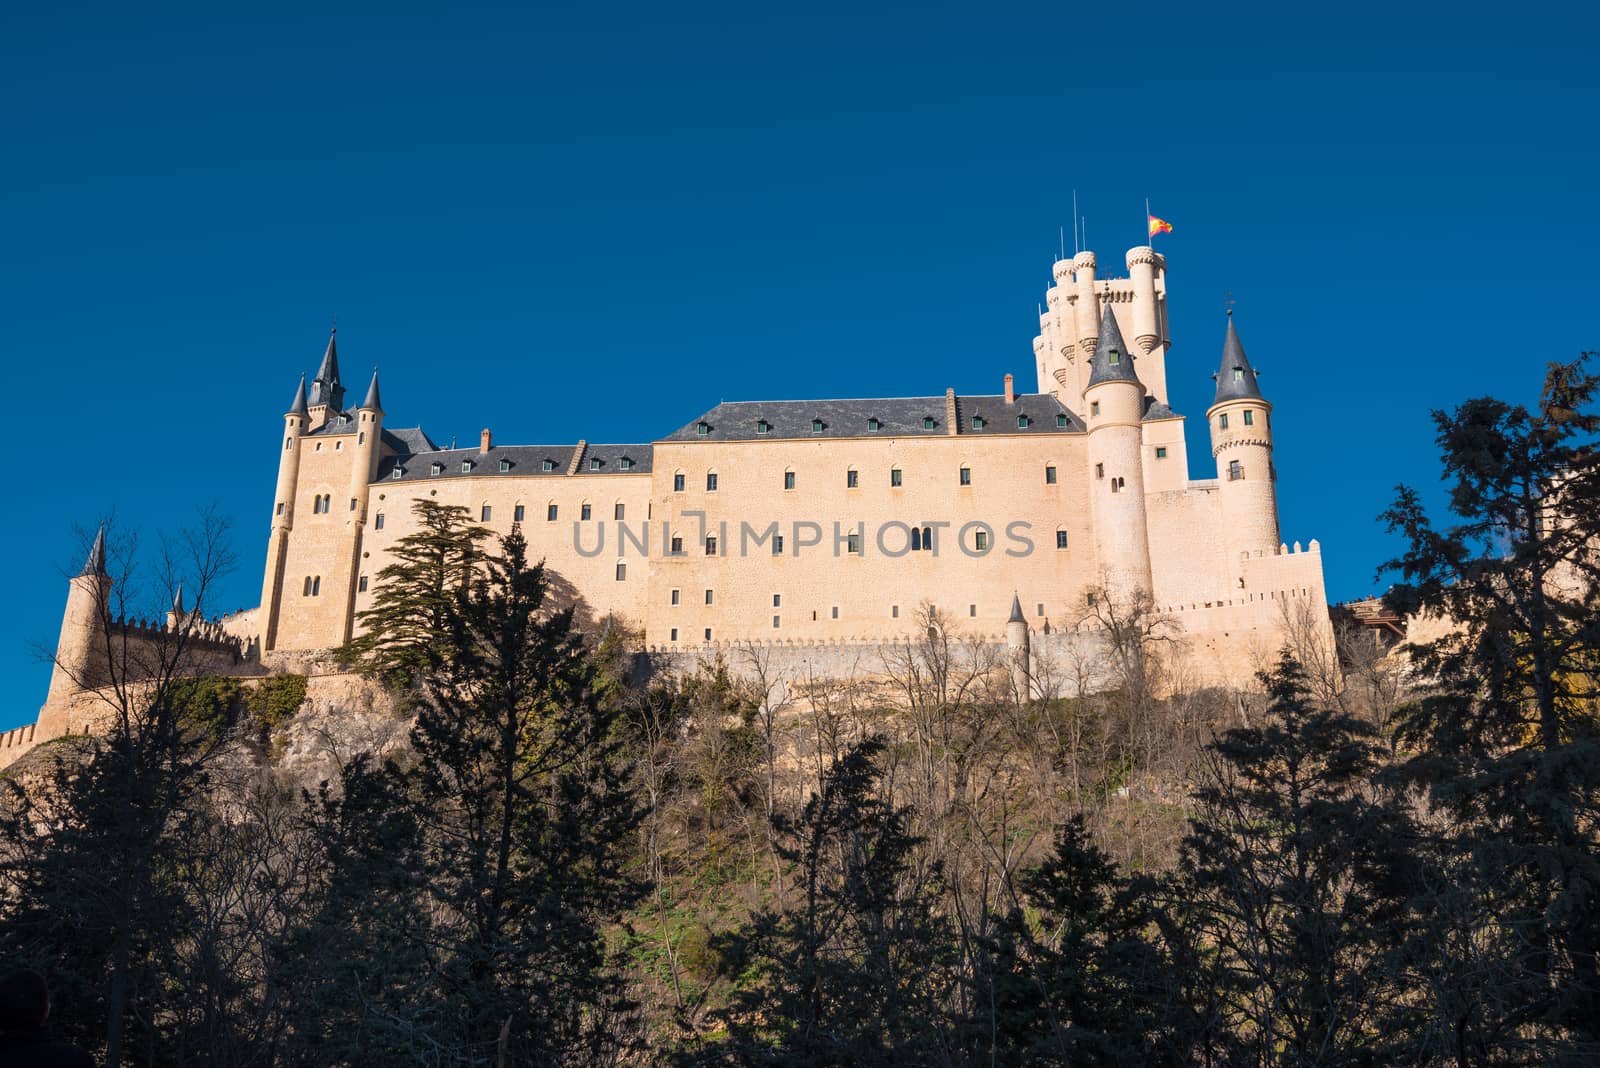 Famous Alcazar castle in Segovia, Castilla y Leon, Spain. by HERRAEZ